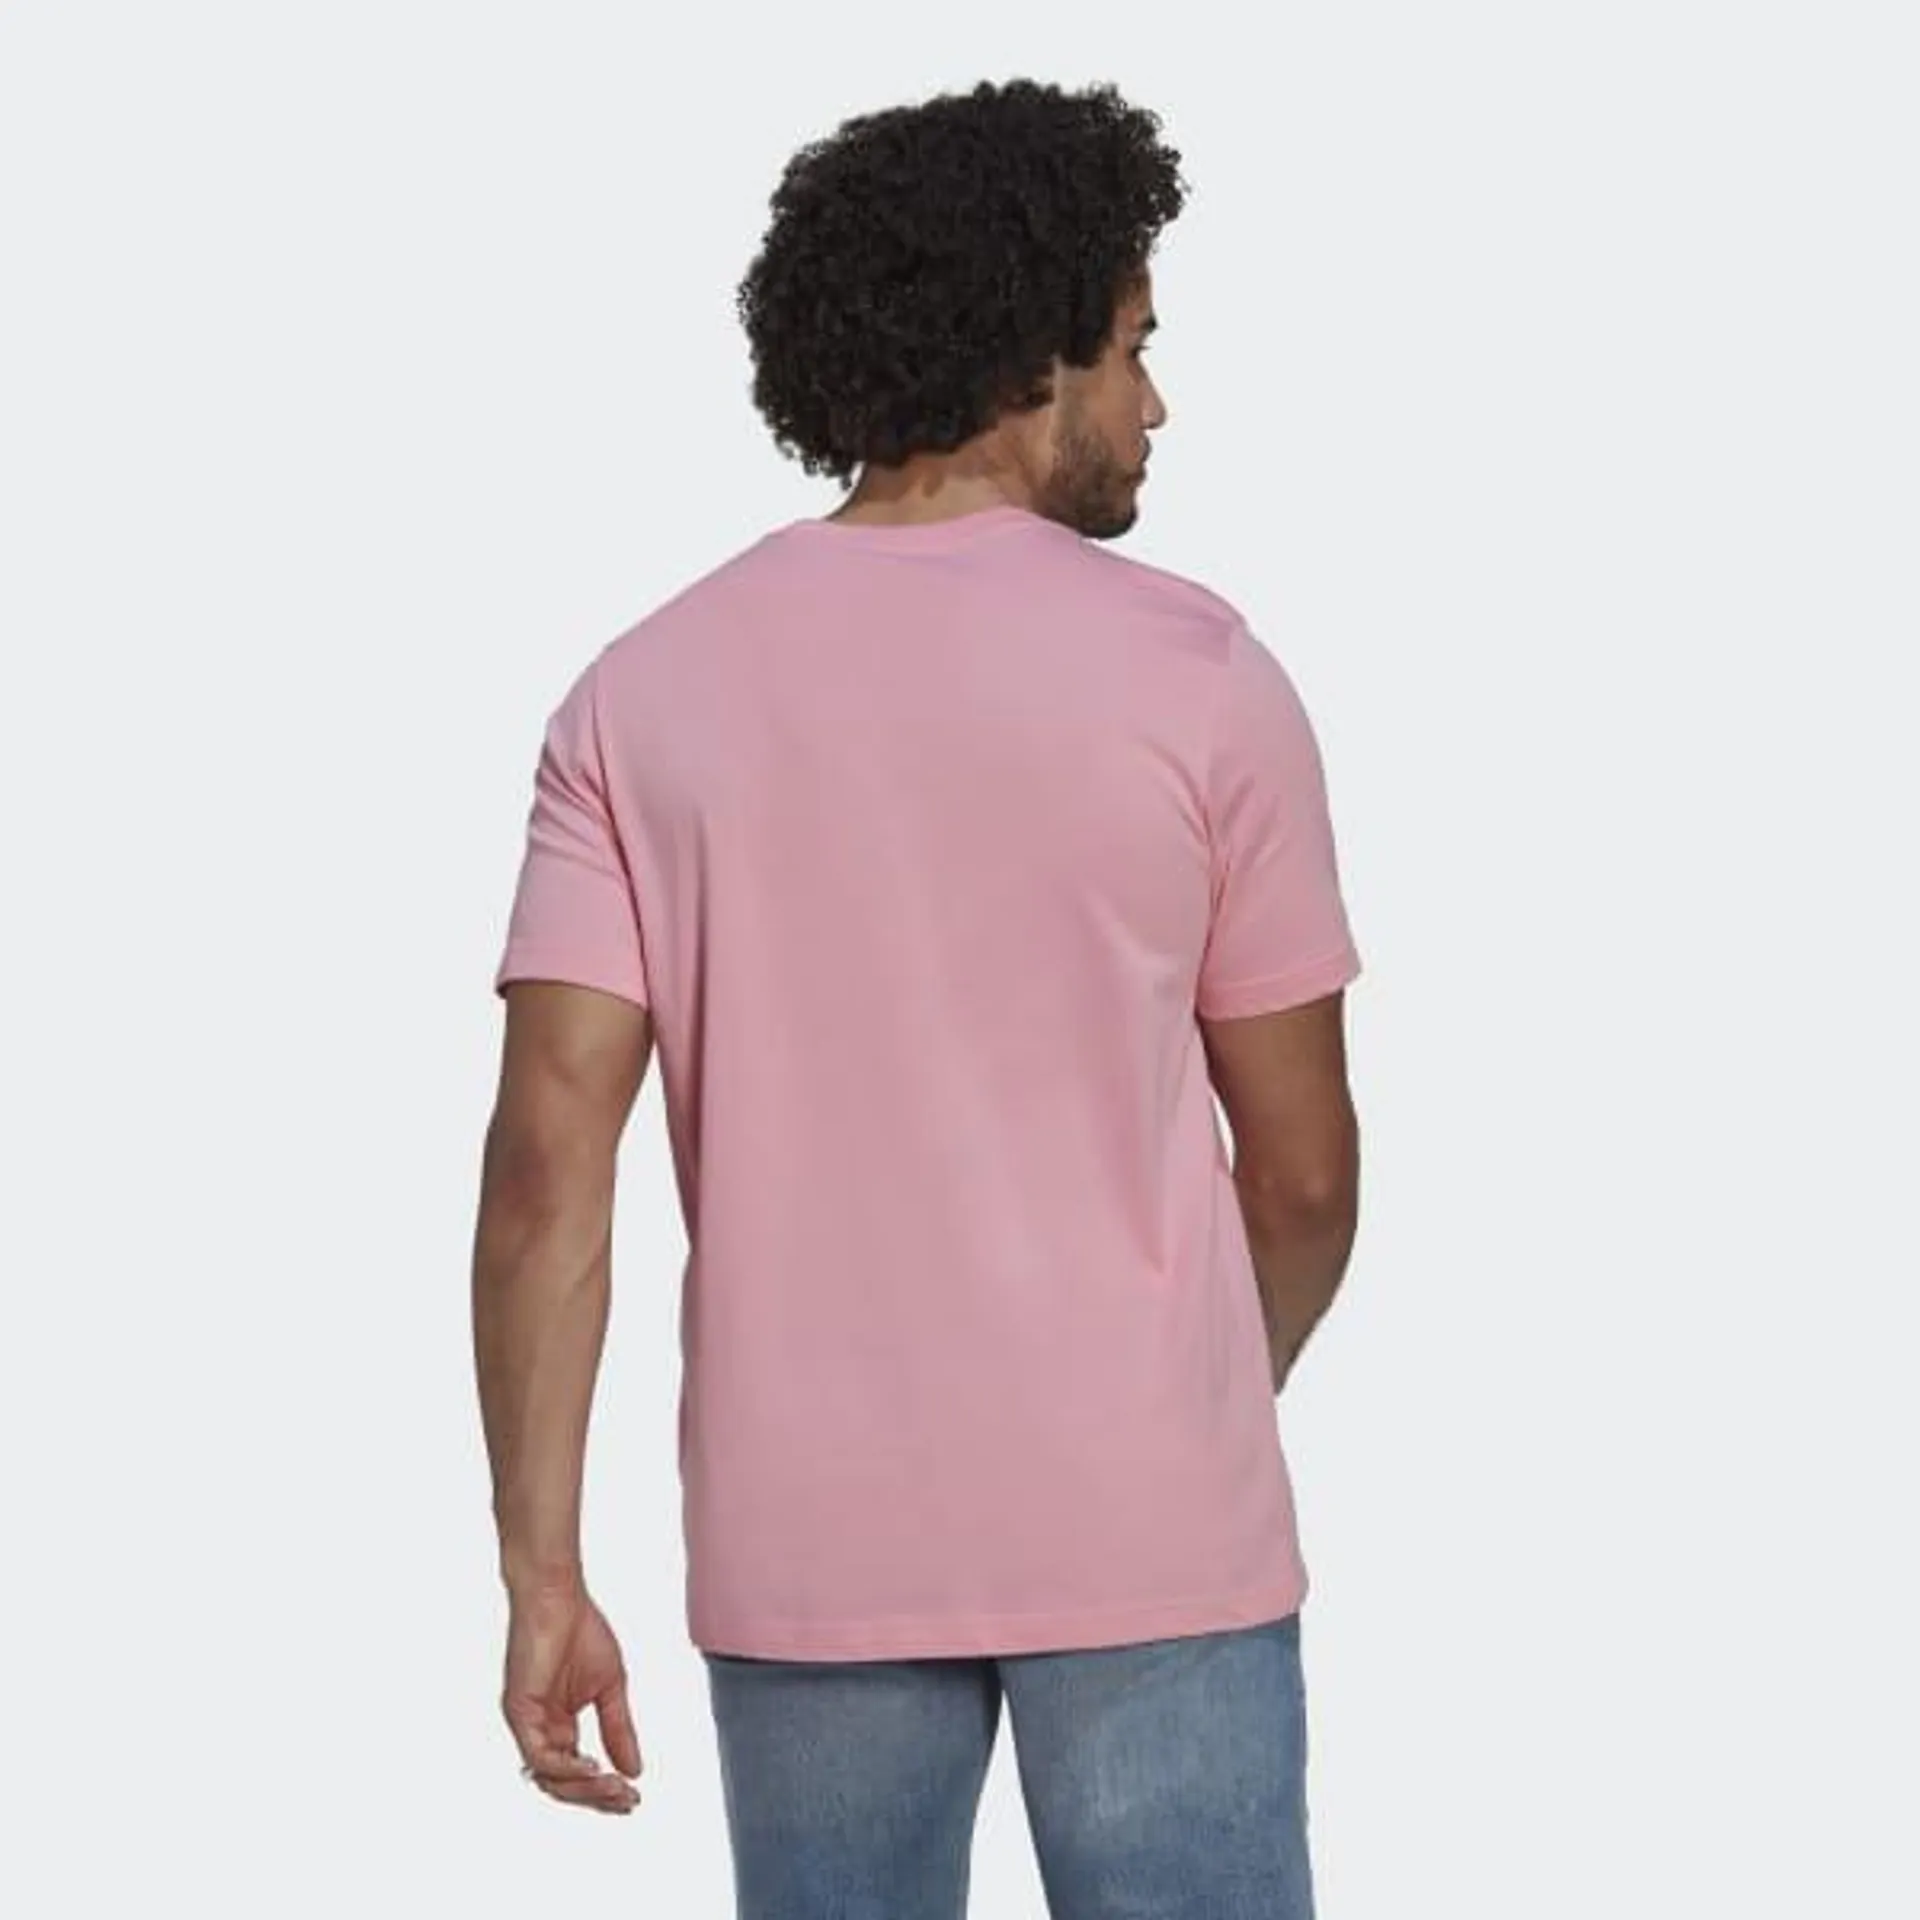 Adicolor Essentials Trefoil T-Shirt